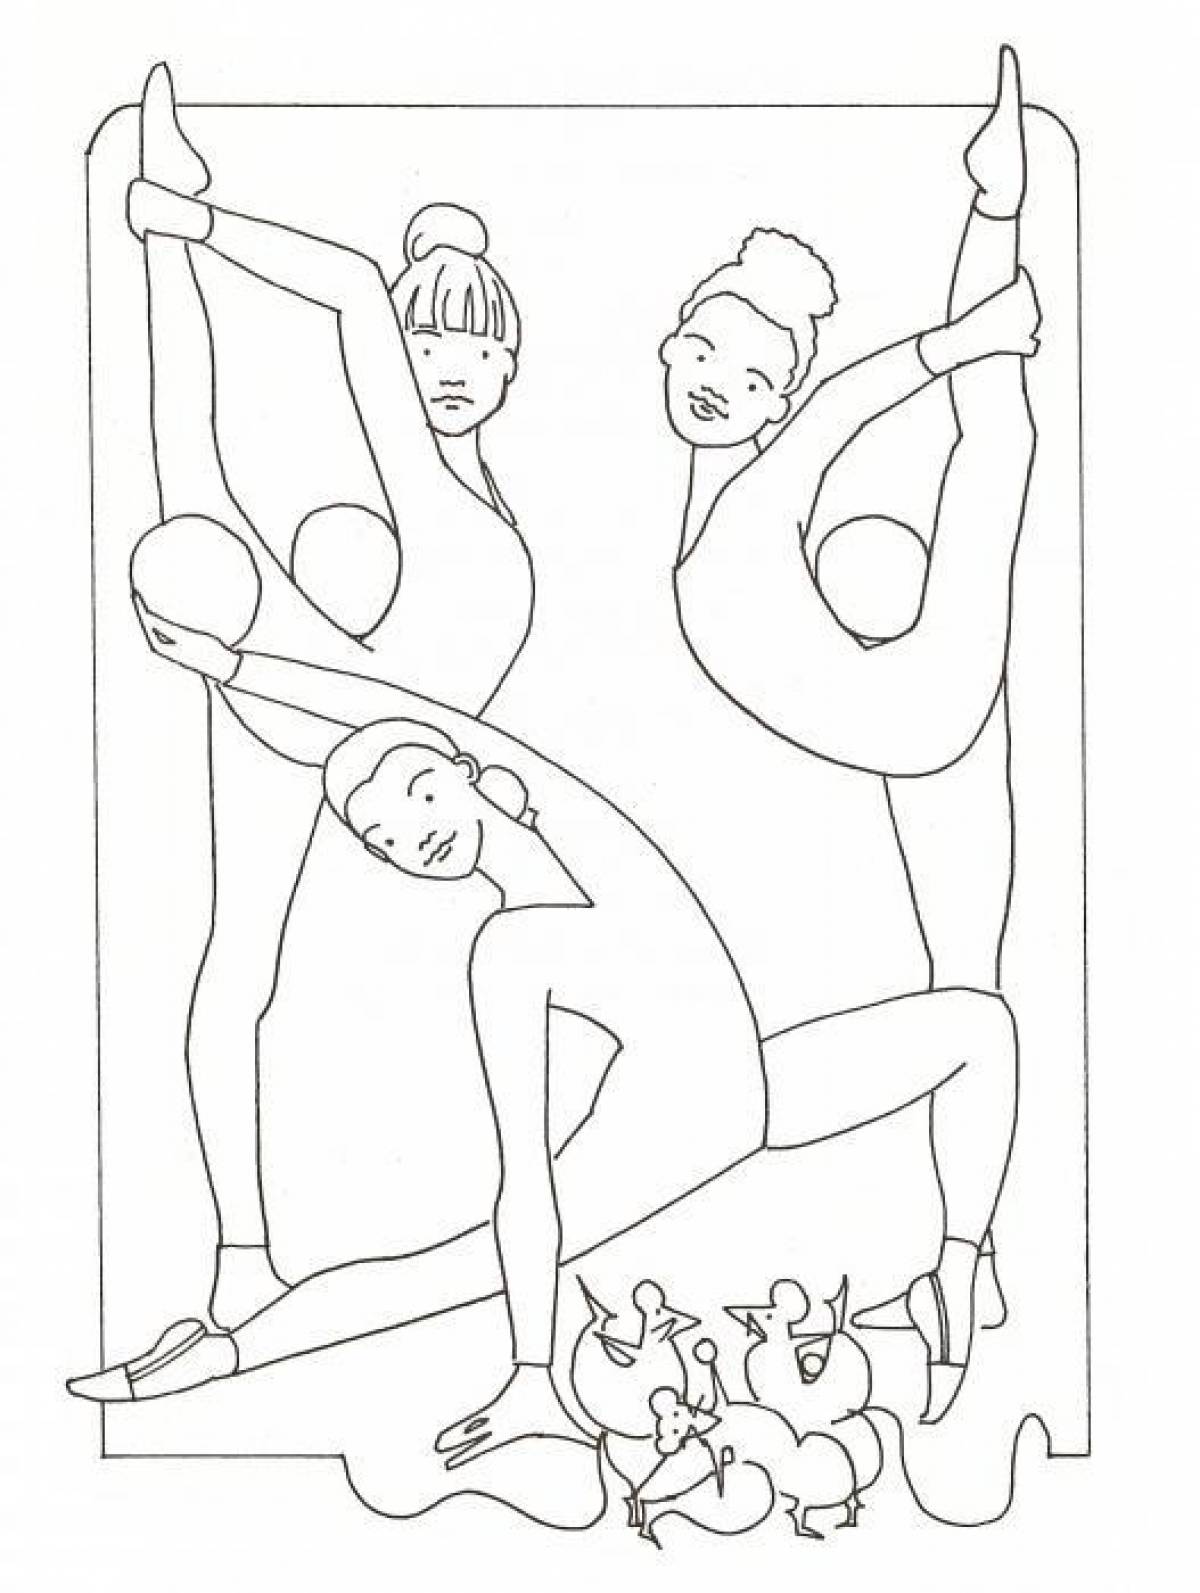 Рисунок на тему акробатика